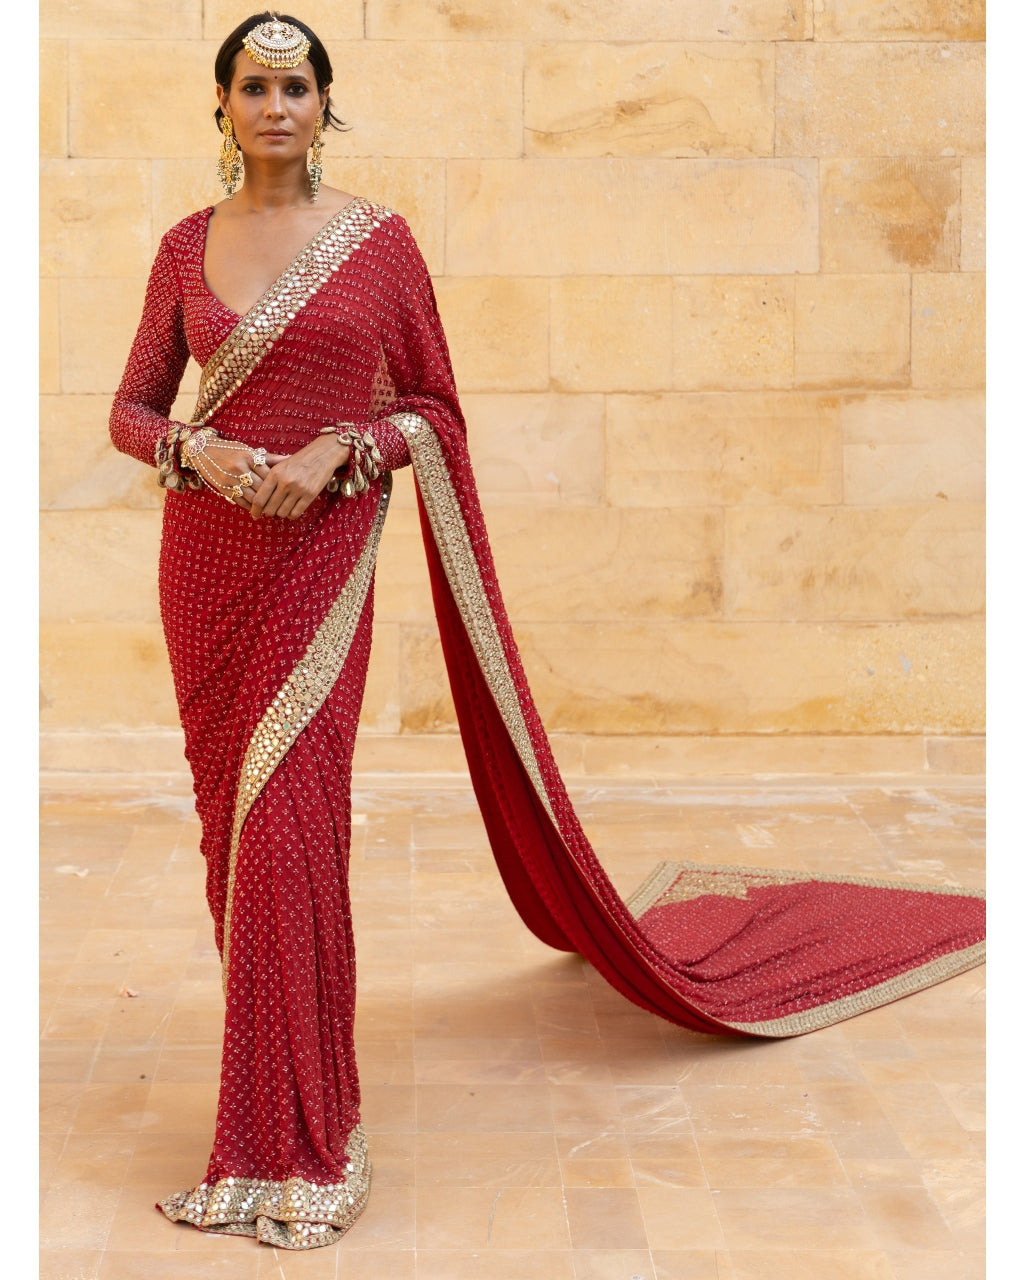 Classic Red Sequin Sari